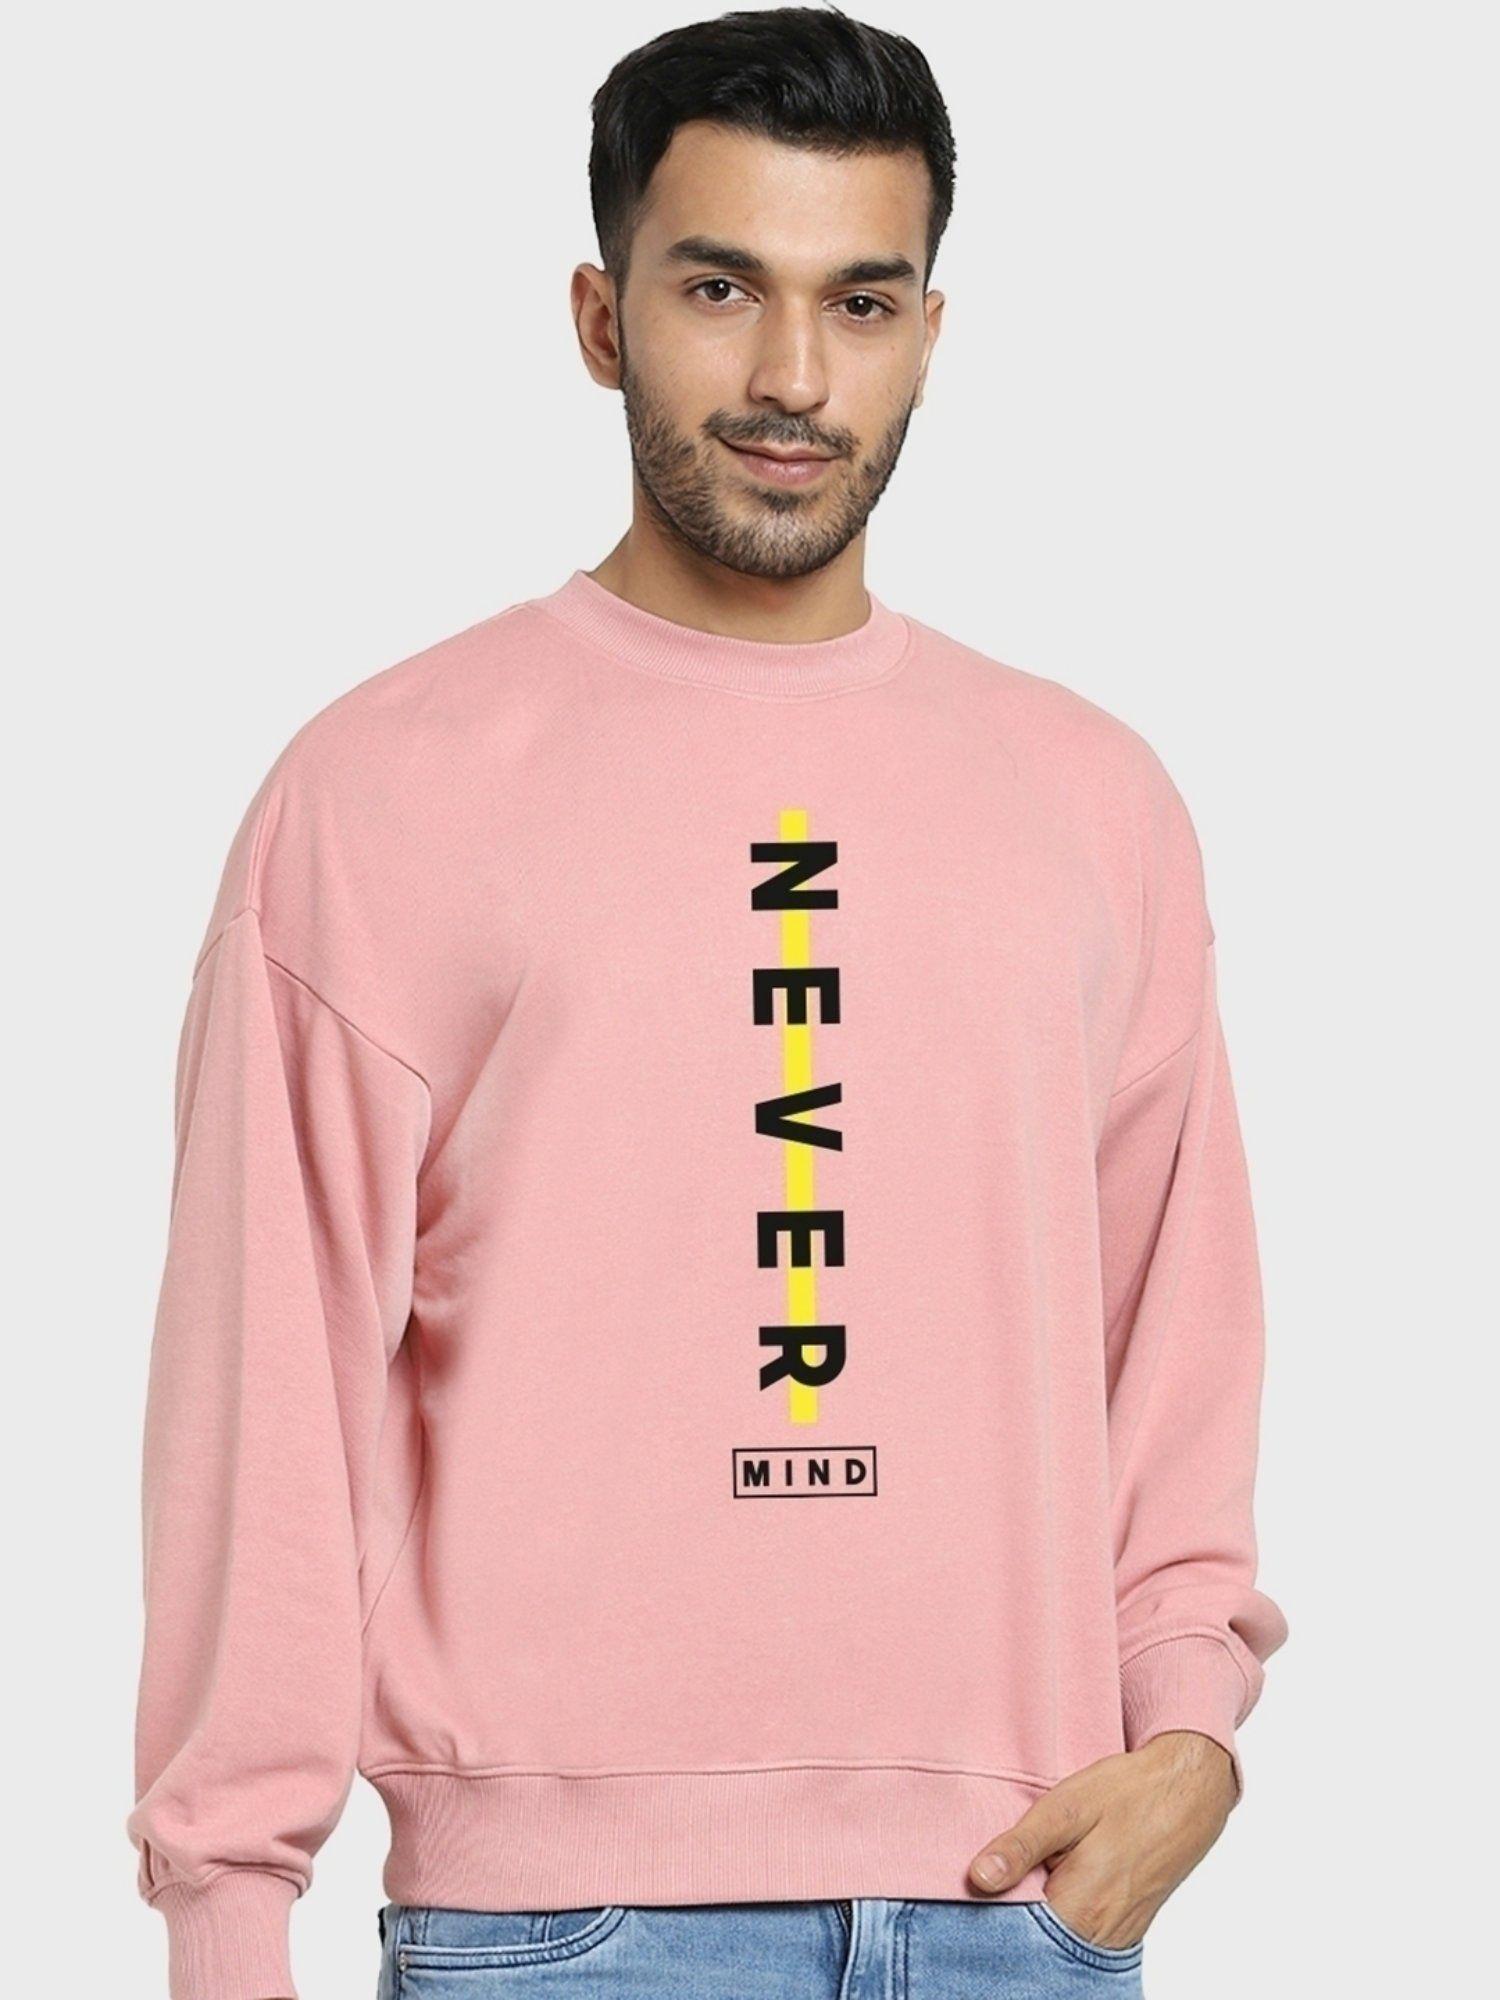 men's-pink-never-mind-typography-oversized-sweatshirt